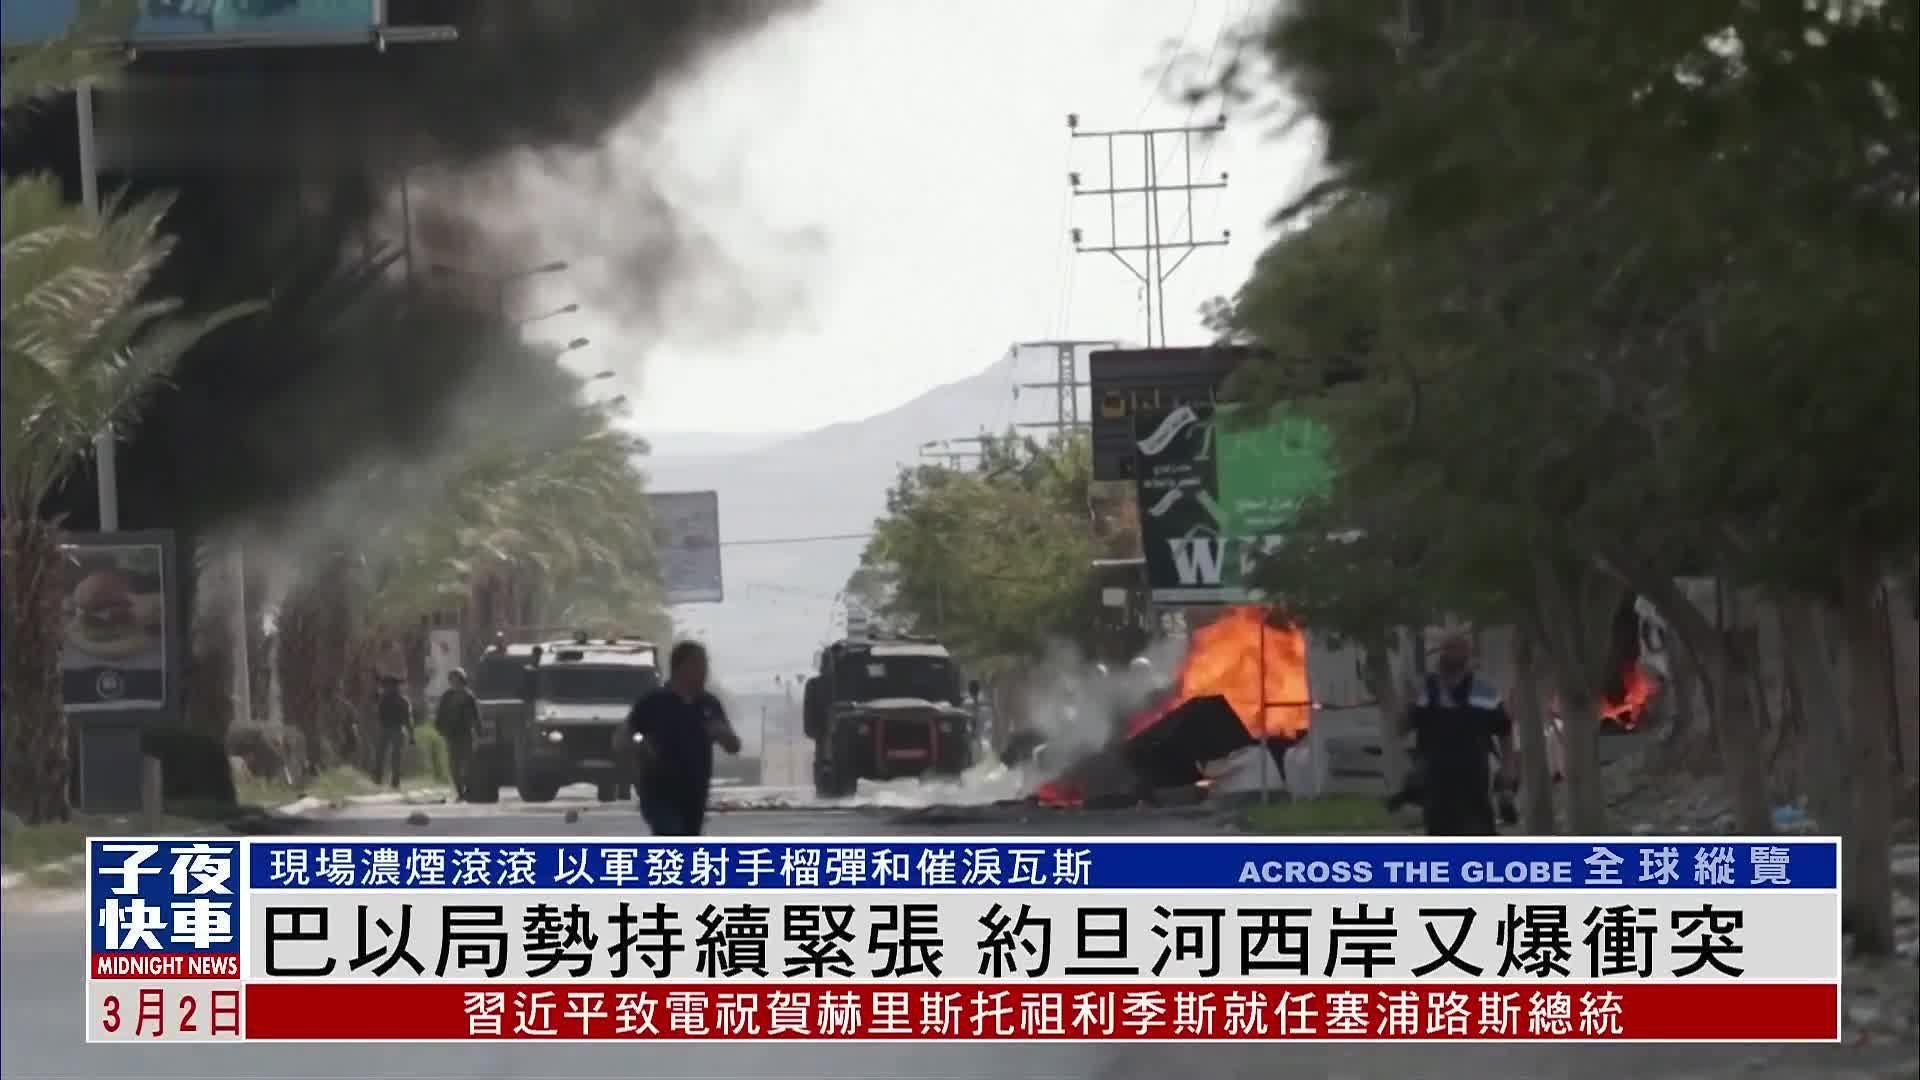 全球连线 | 新华社记者直击巴以冲突前沿小城